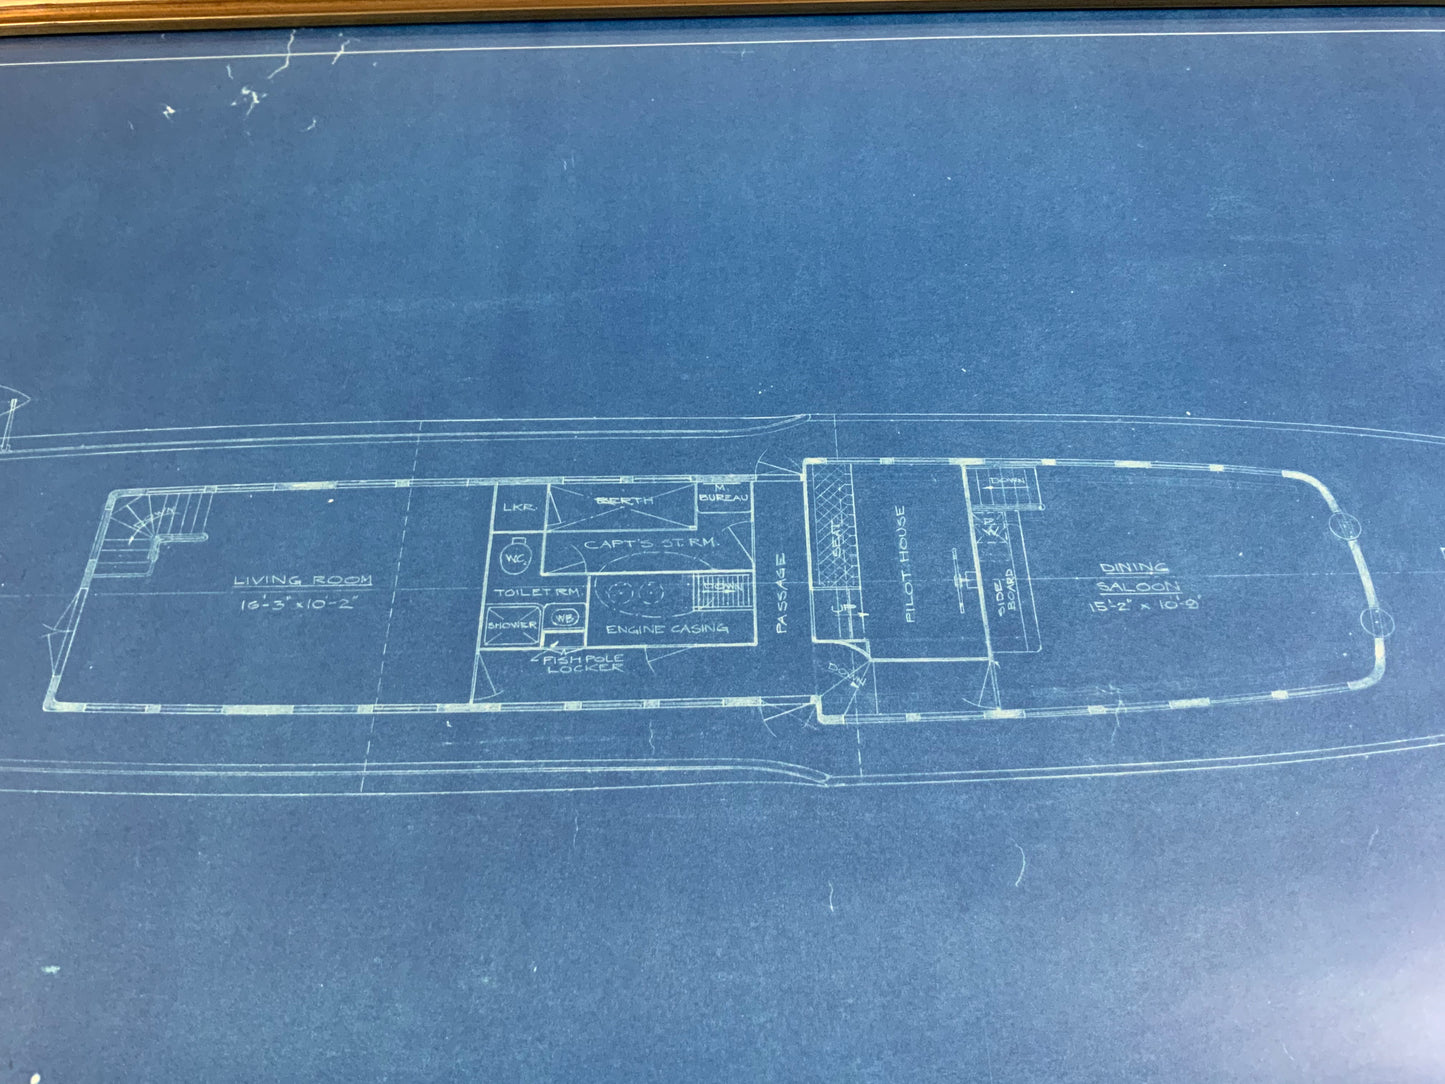 Original Yacht Blueprint P-201-2 by John Wells - Lannan Gallery